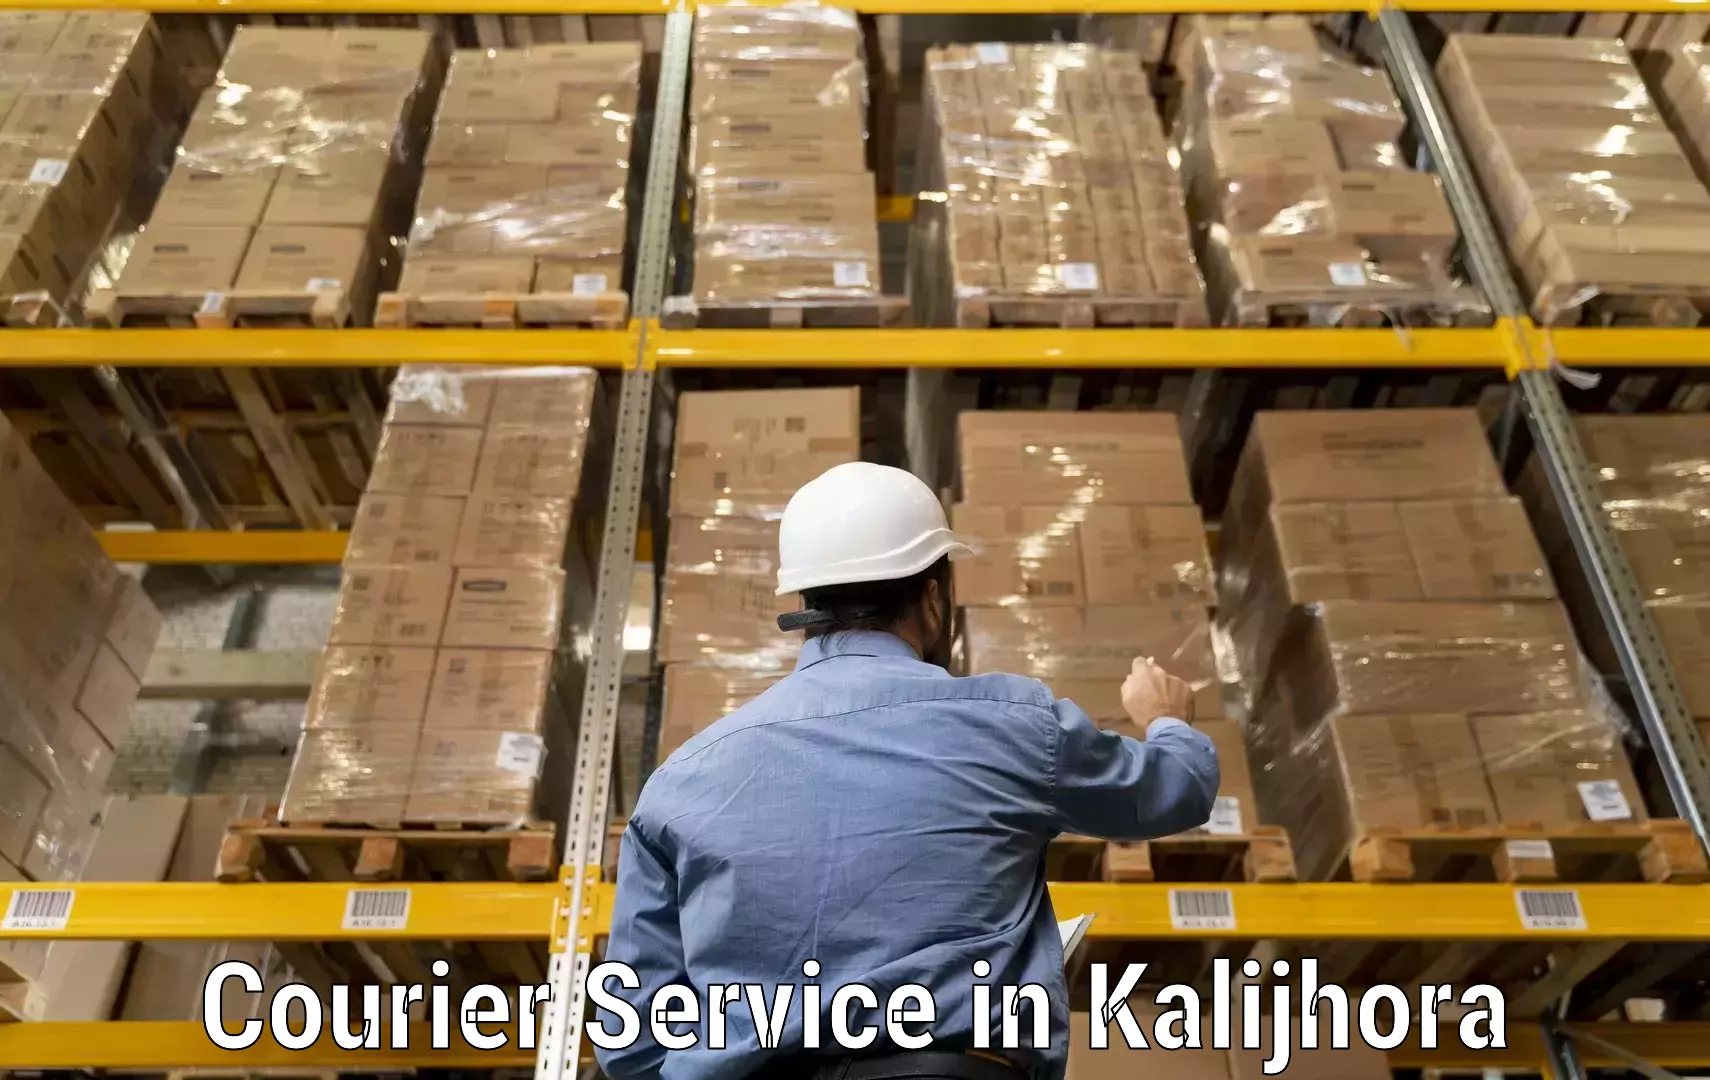 Smart courier technologies in Kalijhora